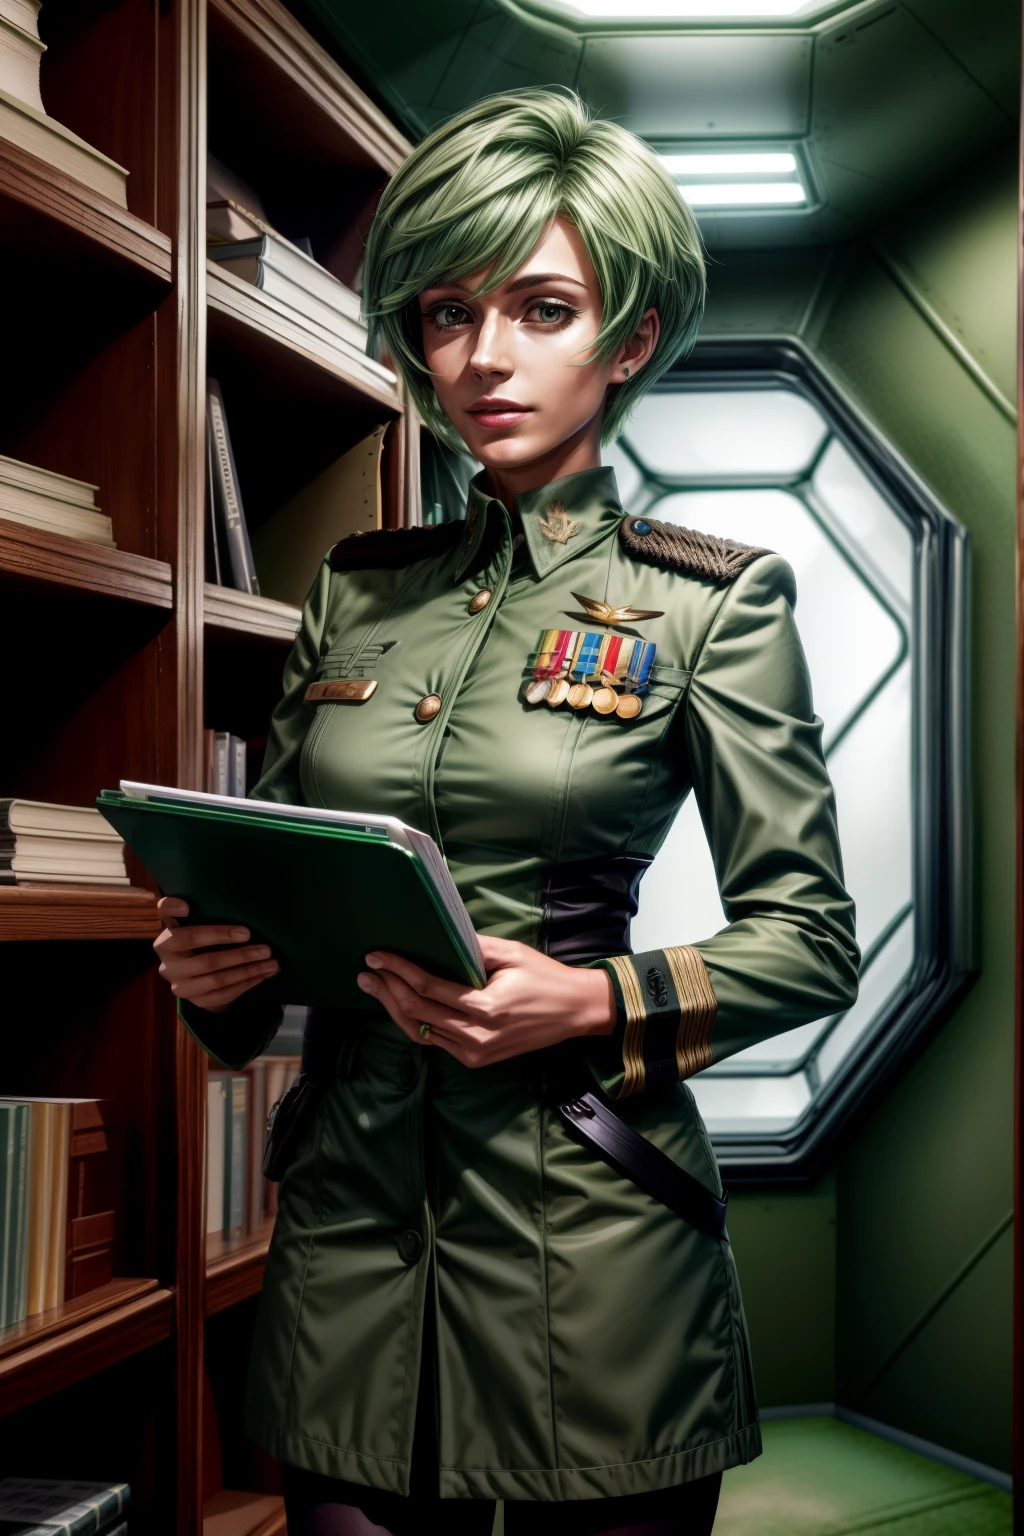 フレデリカ・グリーンヒル, 25歳, ショートカット, 緑の髪, 中尉&#39;制服, クリップボードを持っている, インターホンで話す, 宇宙船の内部